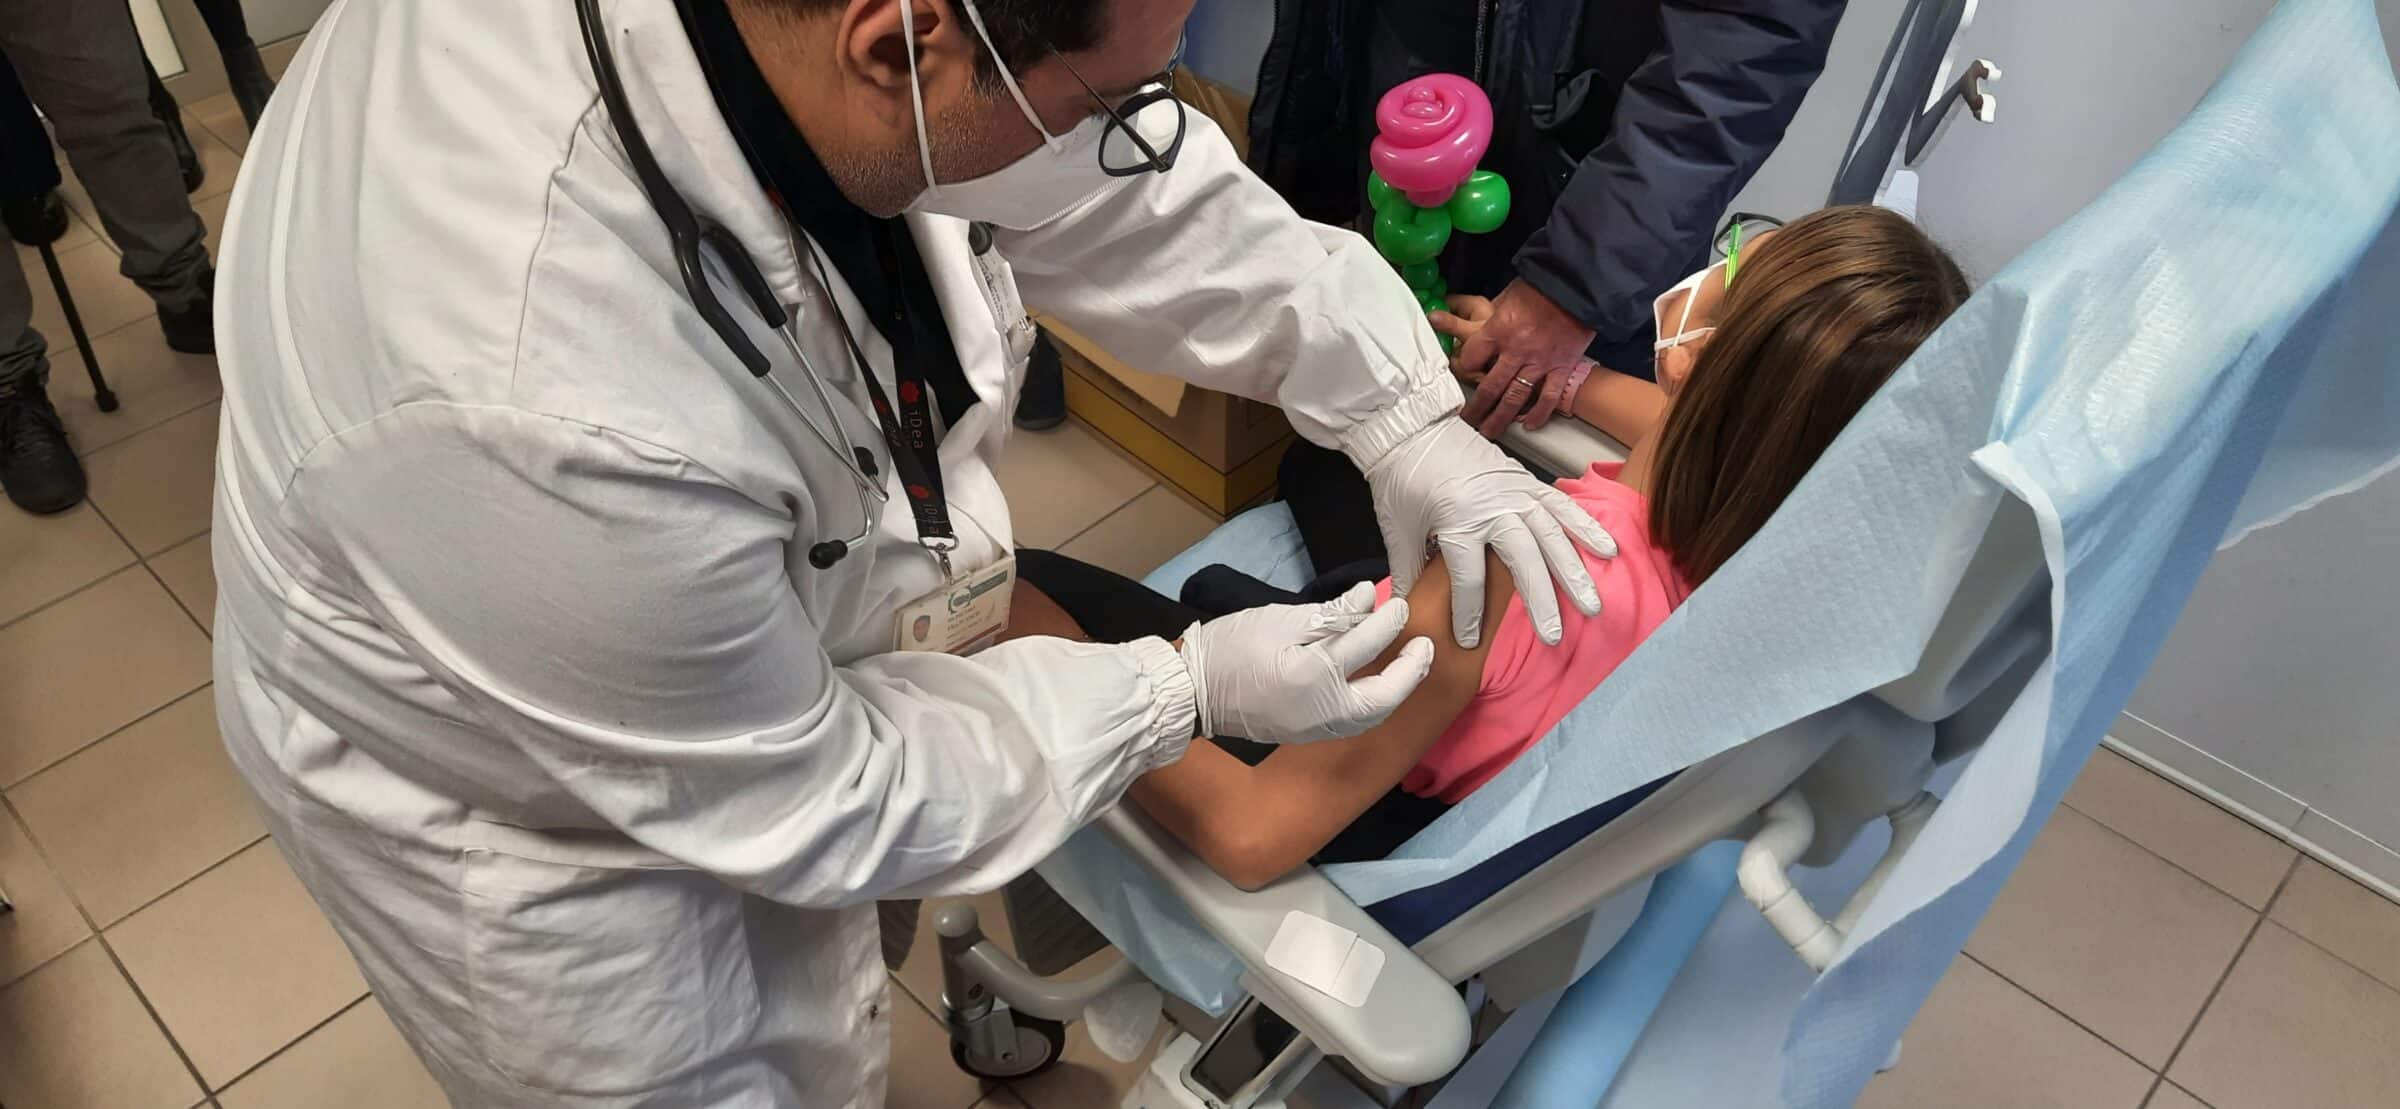 All’ospedale Cannizzaro i primi bambini vaccinati di Catania, presenti Razza e Liberti – FOTO e VIDEO